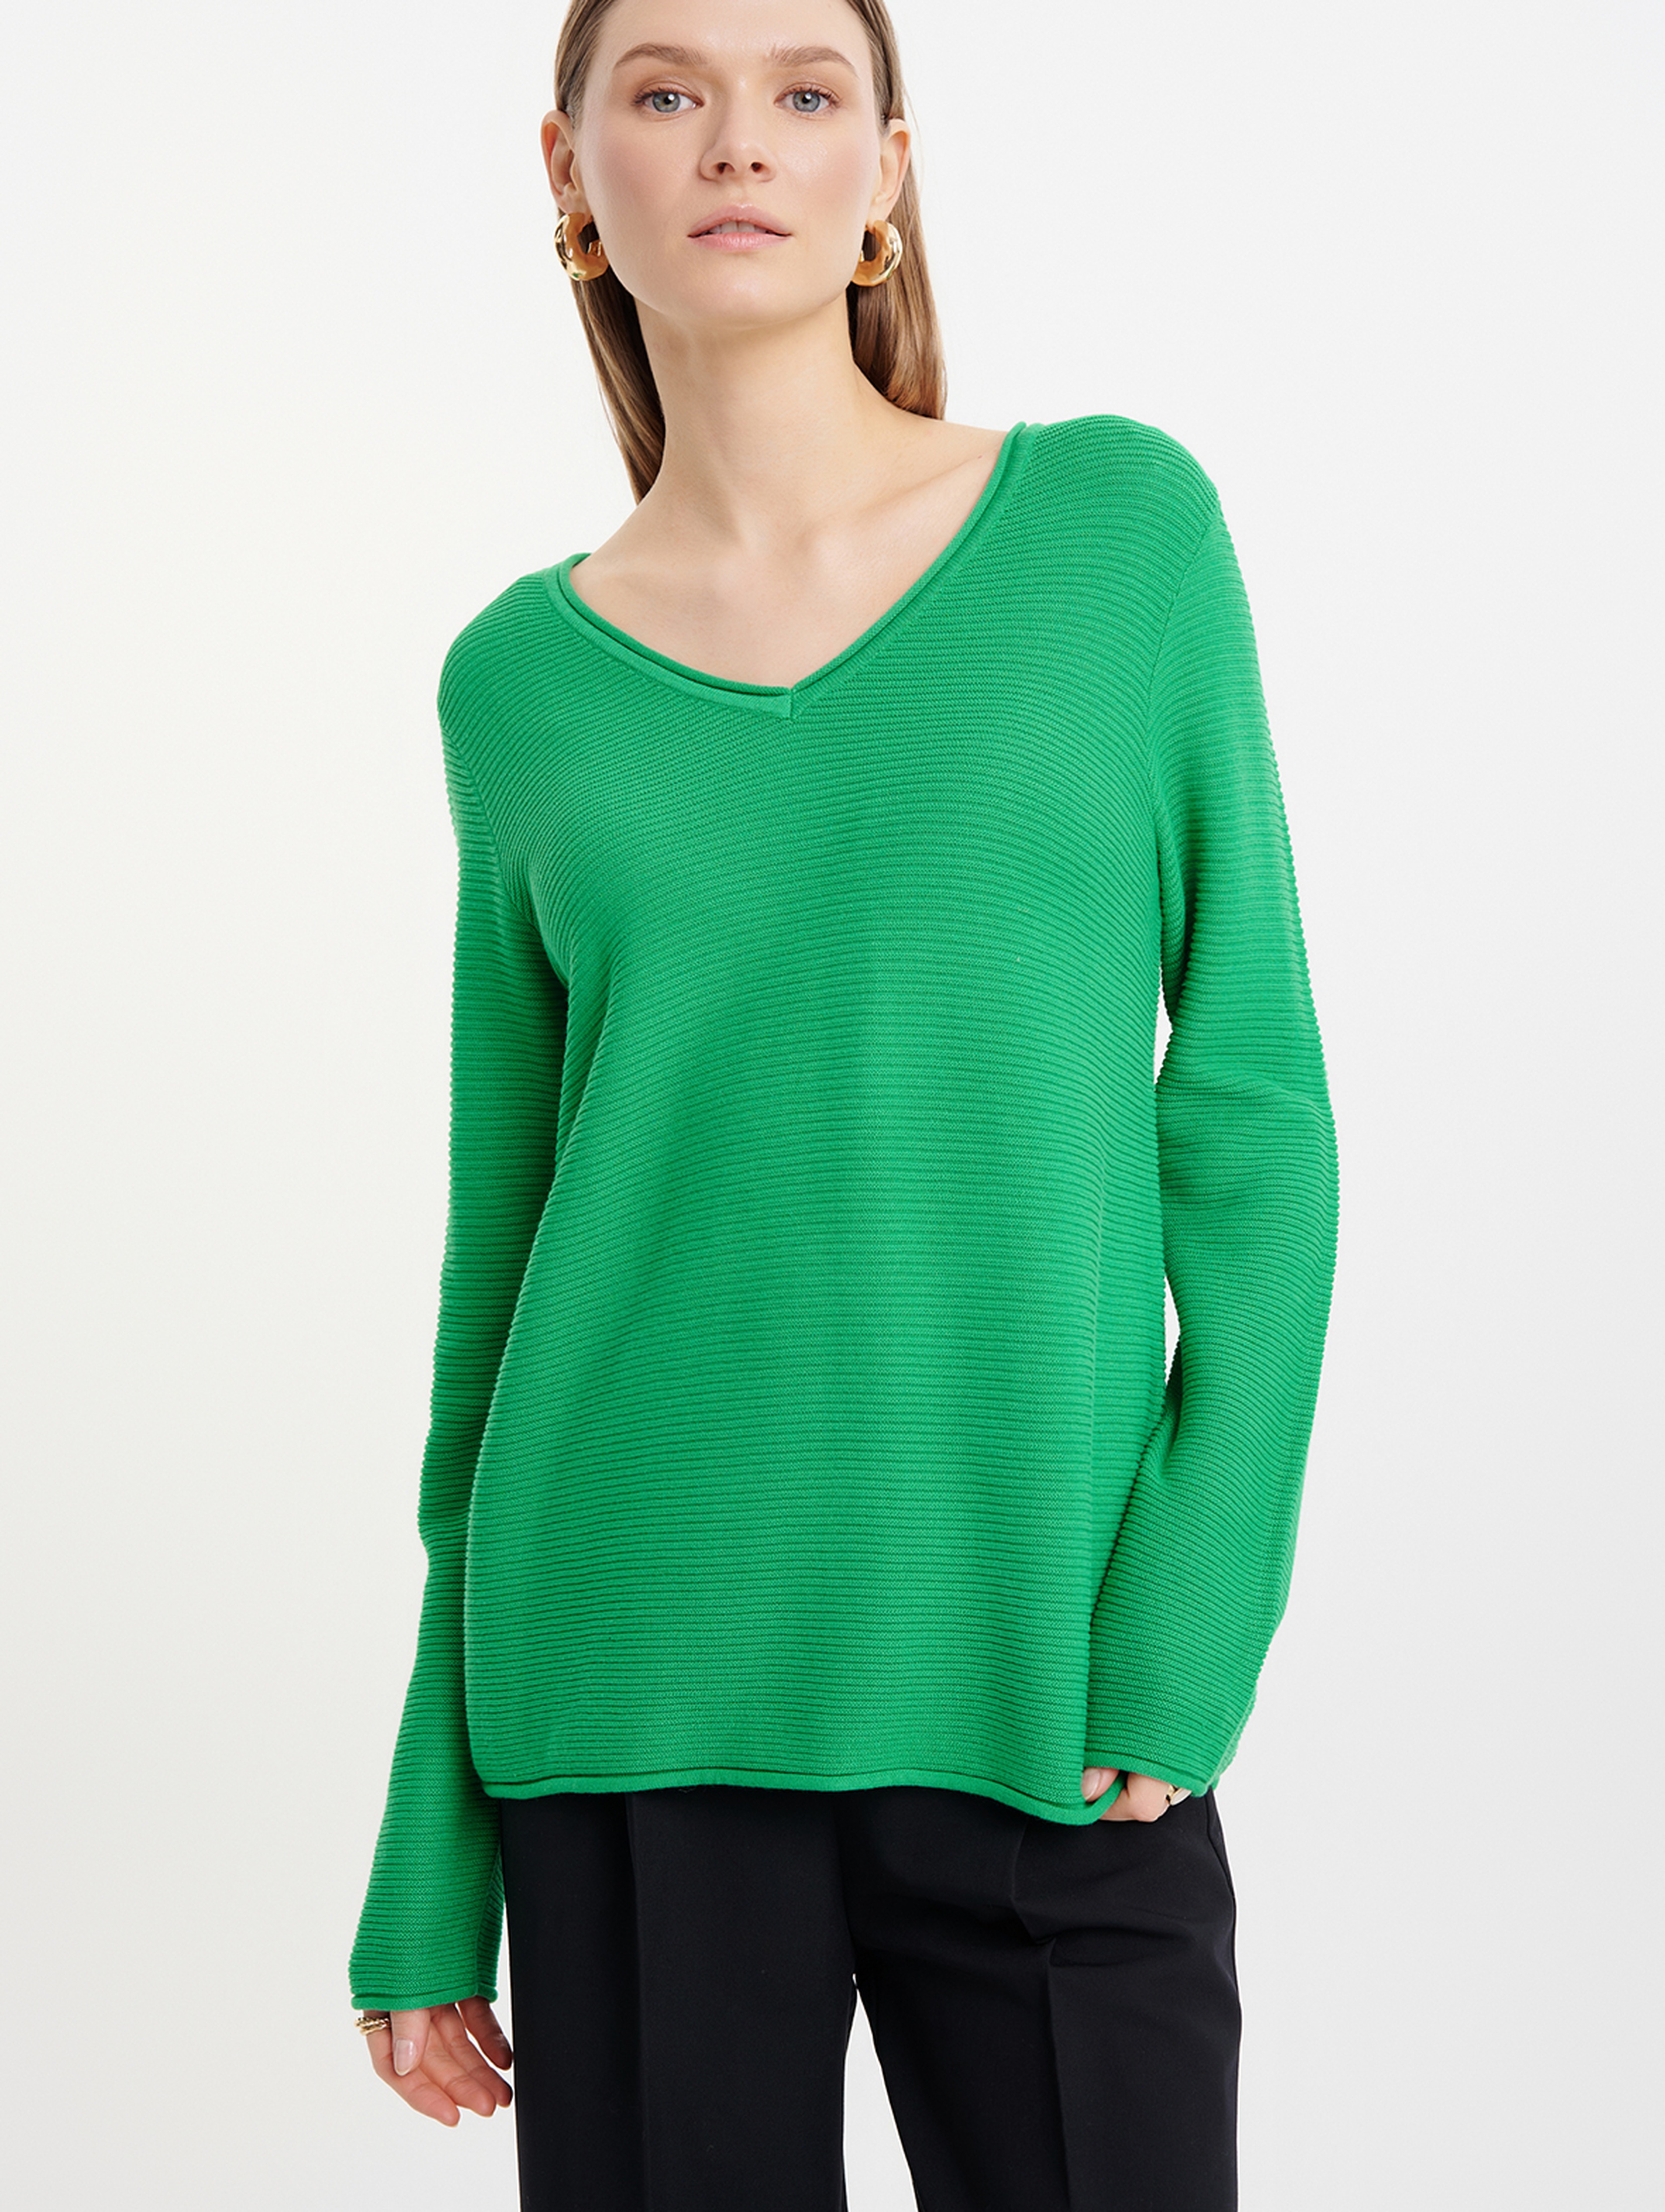 Sweter damski w strukturę zielony